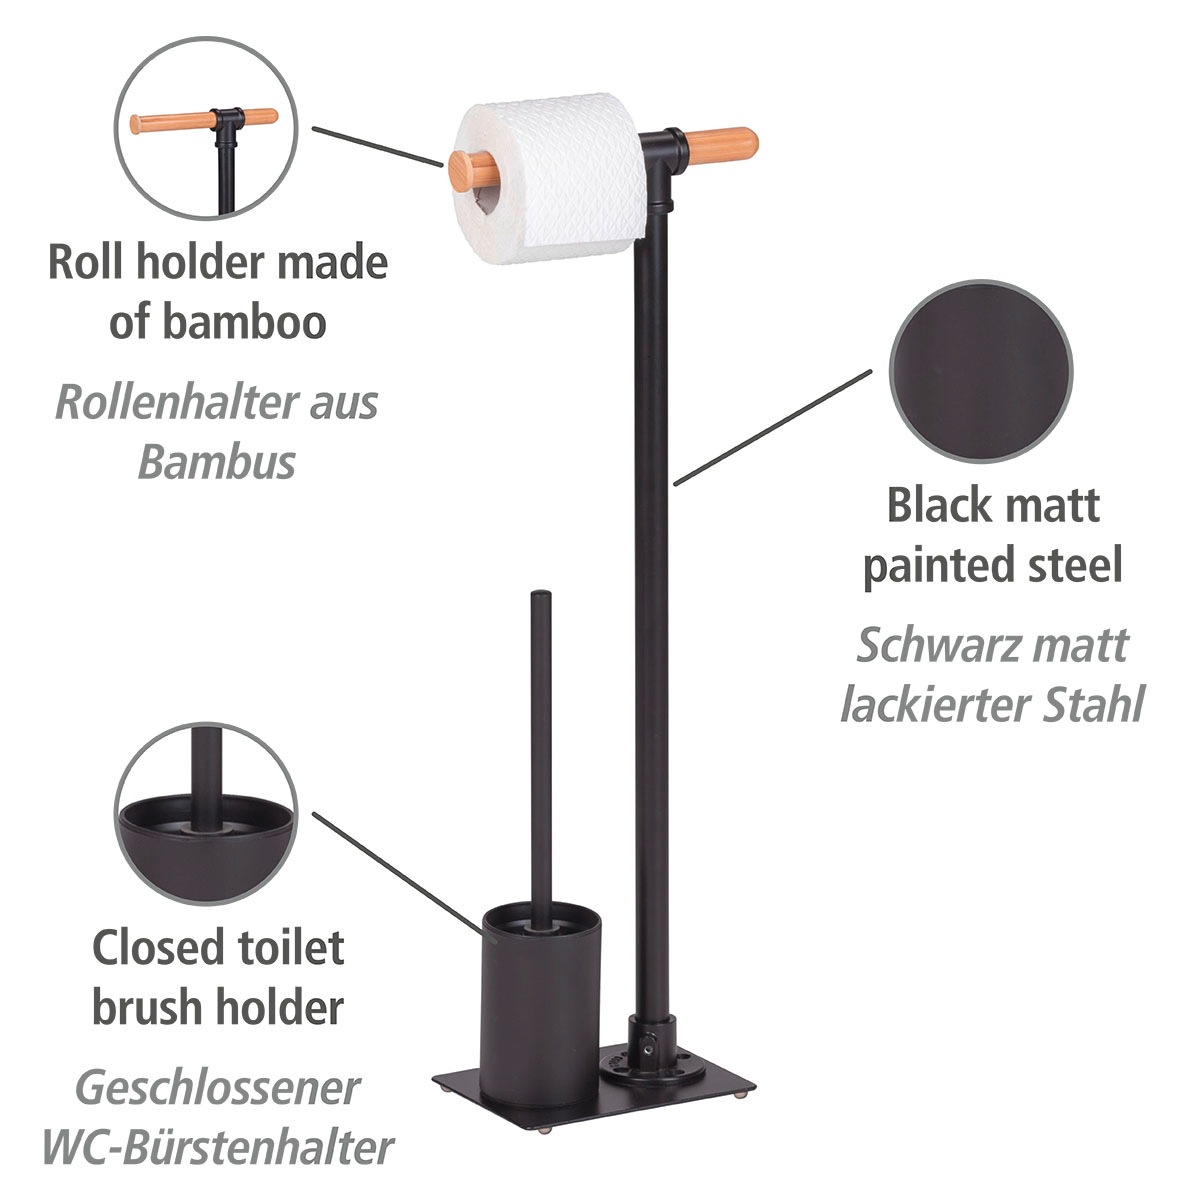 WENKO WC-Garnitur »Forli«, aus Stahl-Bambus, Online inkl. Shop Rollenhalter im OTTO und WC-Bürste